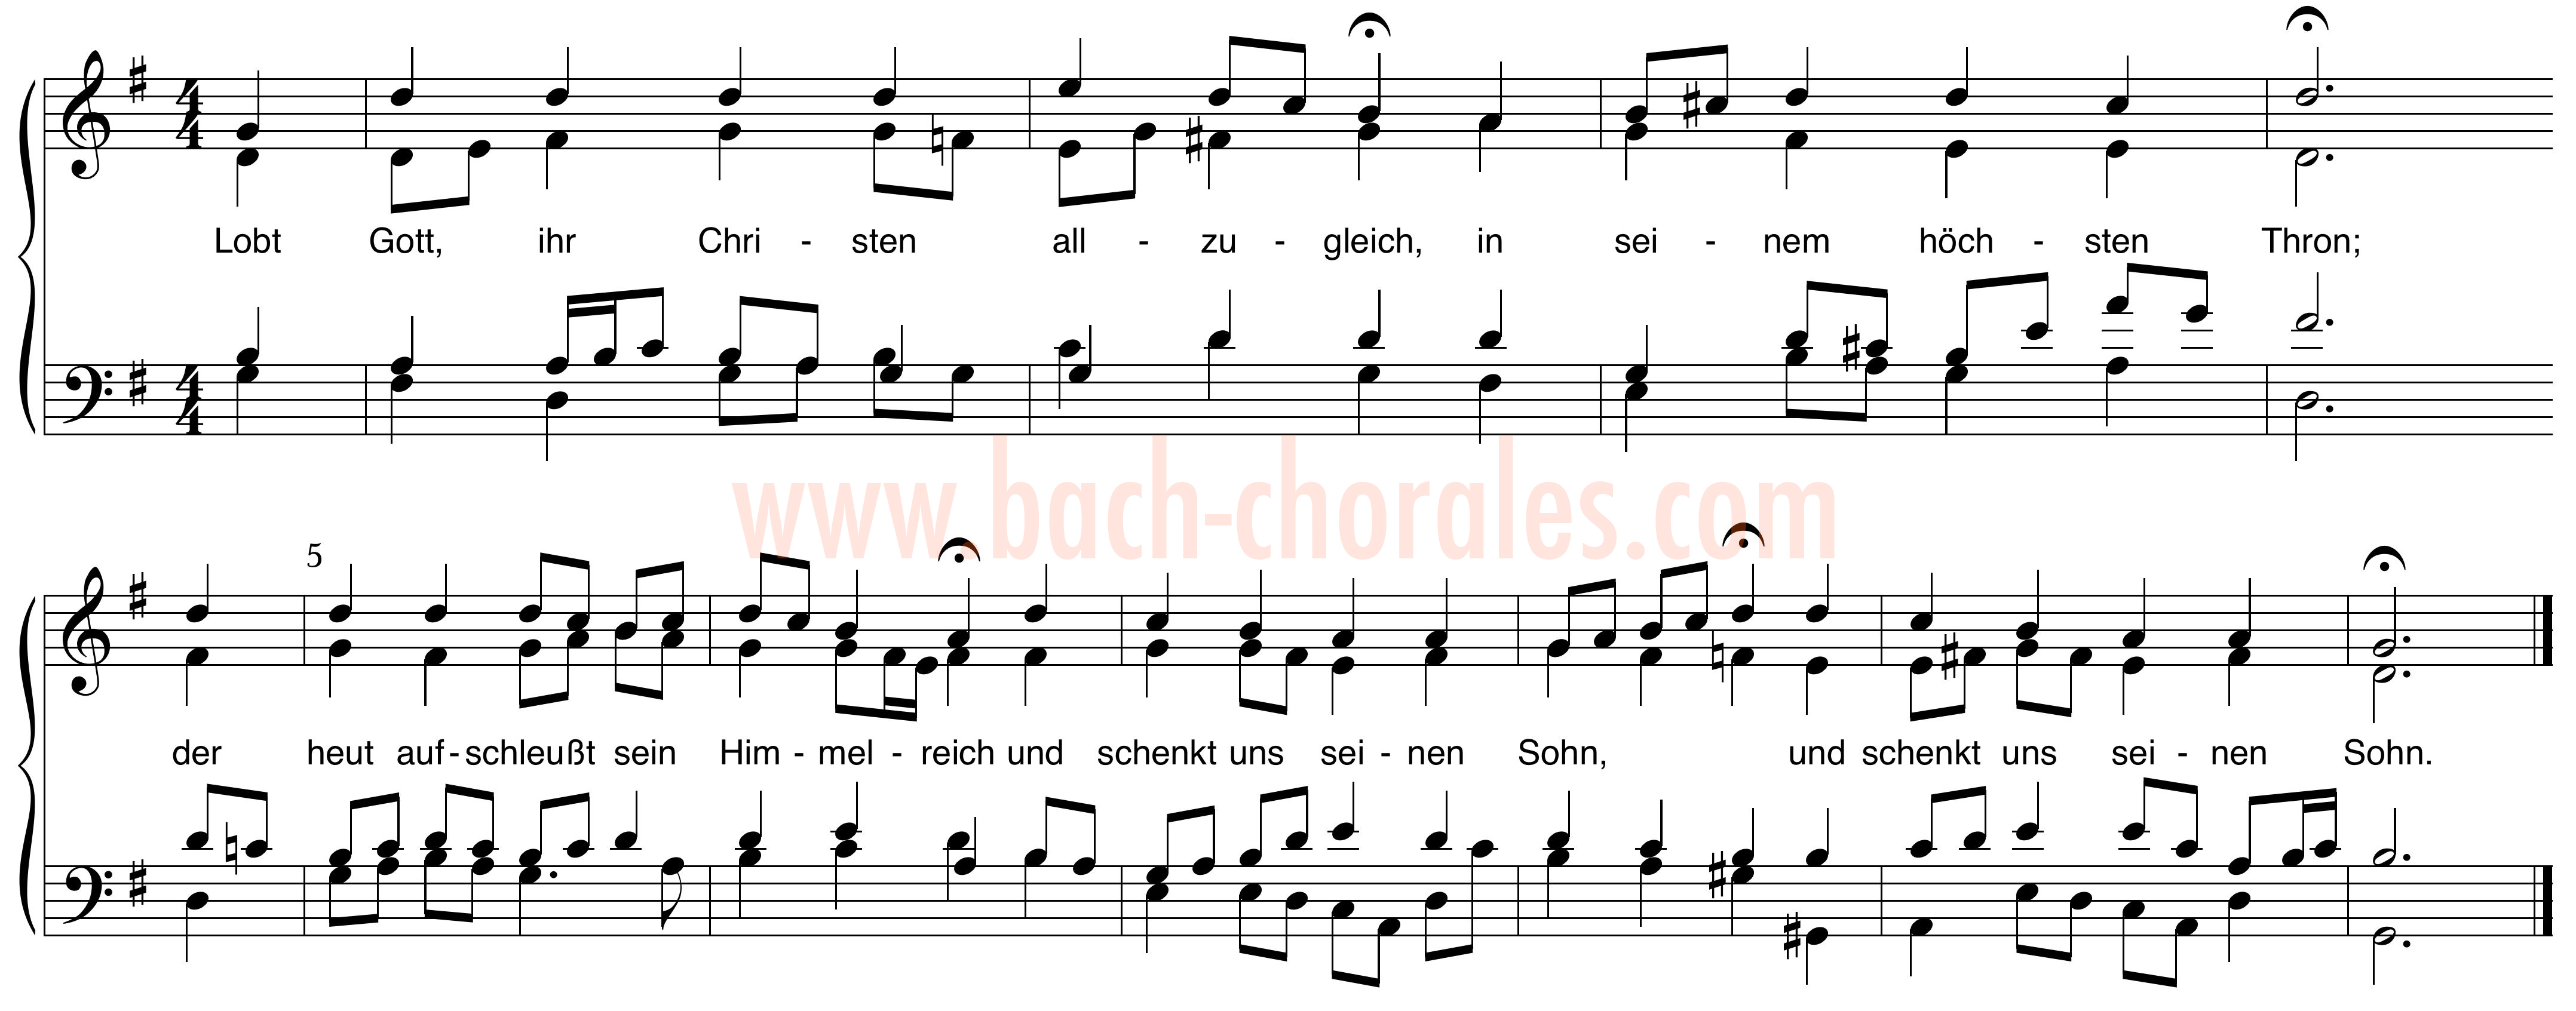 notenbeeld BWV 375 op https://www.bach-chorales.com/